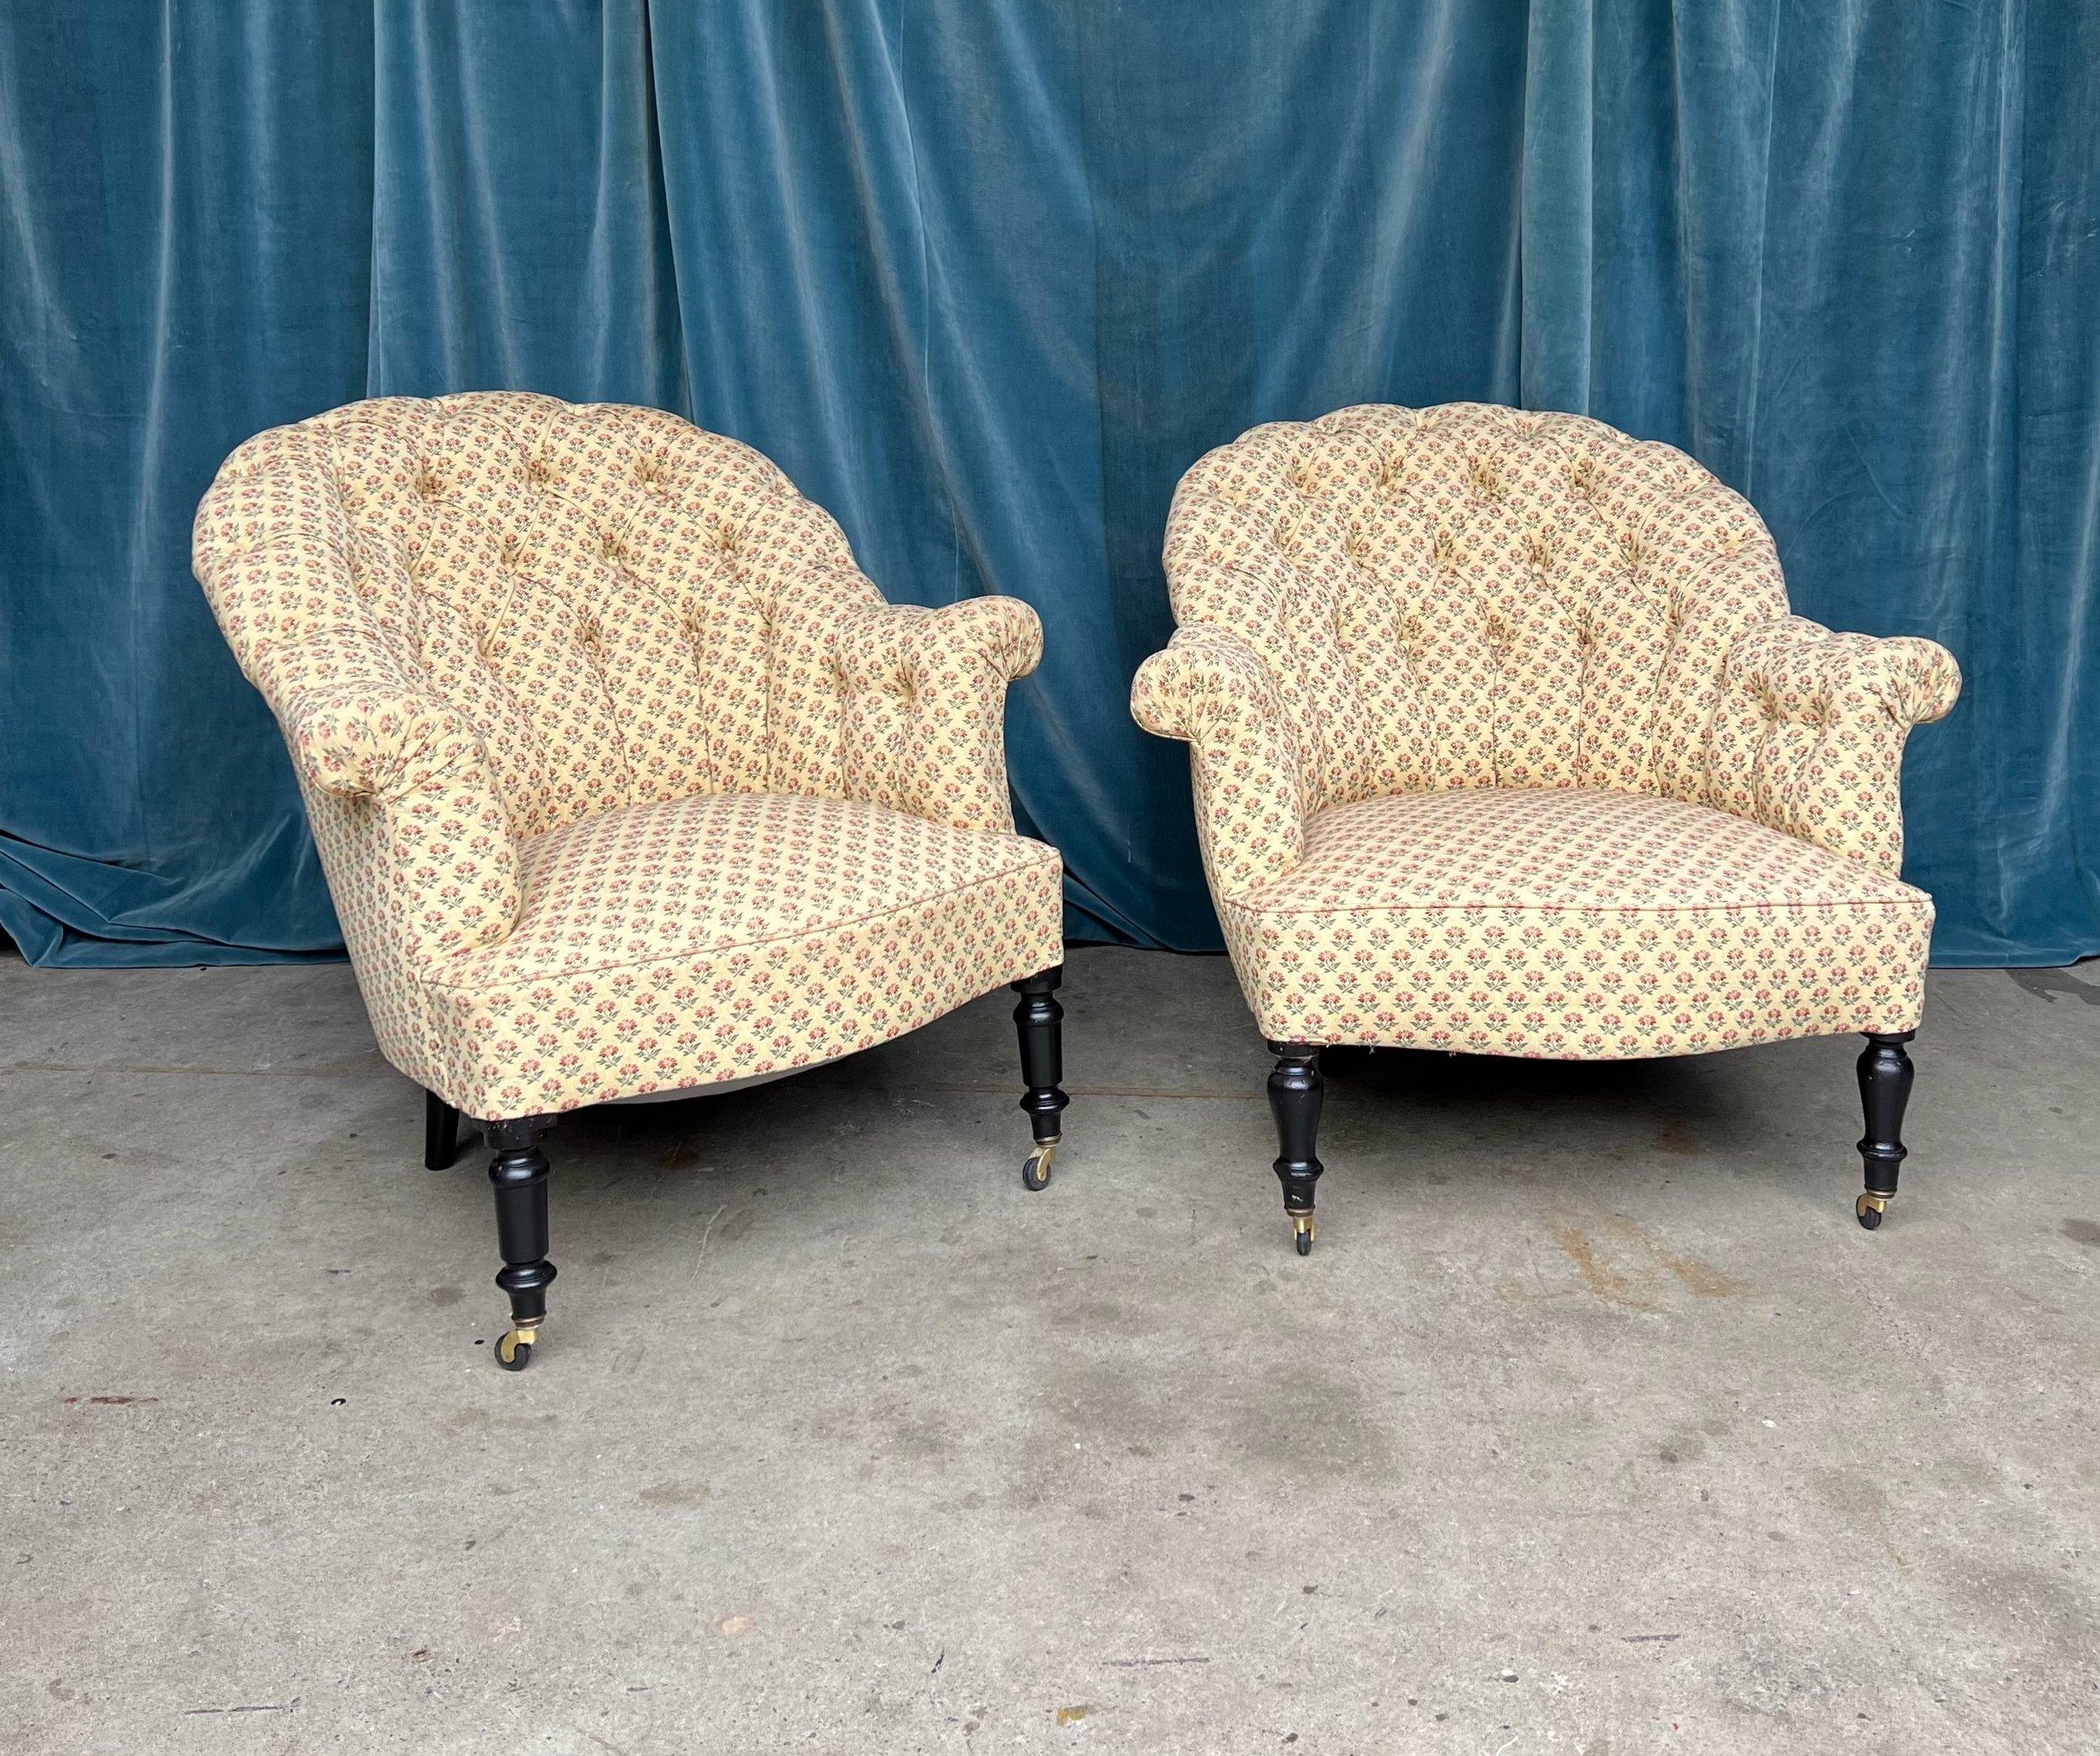 Une élégante paire de fauteuils touffetés Napoléon III du XIXe siècle provenant de France. La paire est tapissée d'un tissu floral vintage, mais elle serait superbement recouverte d'un tissu moderne de votre choix. Les dossiers arrondis sont touffus